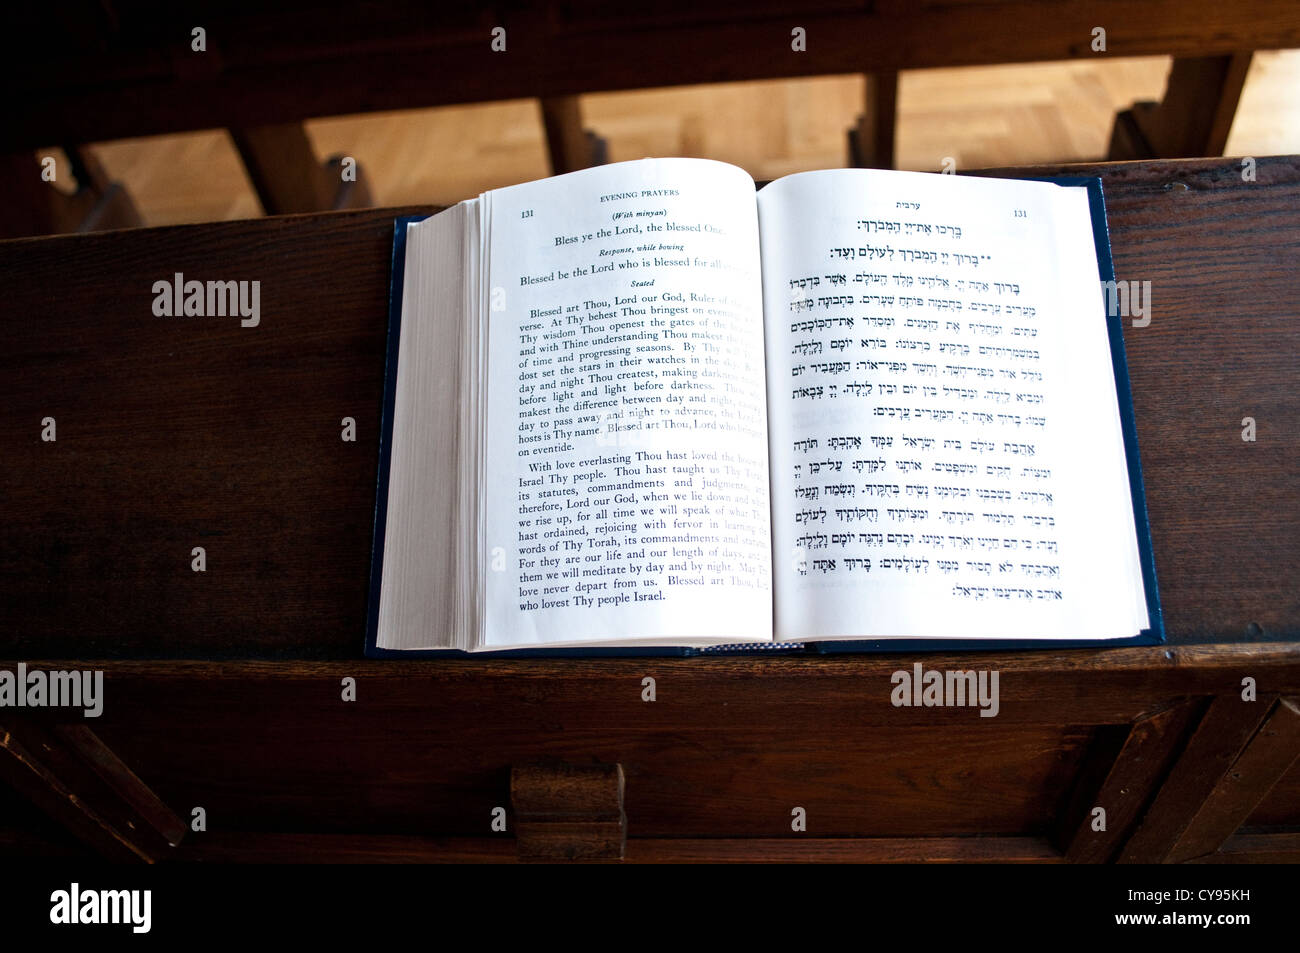 Saint livre sur un banc, synagogue Ashkenazi, Sarajevo, Bosnie et Herzégovine Banque D'Images